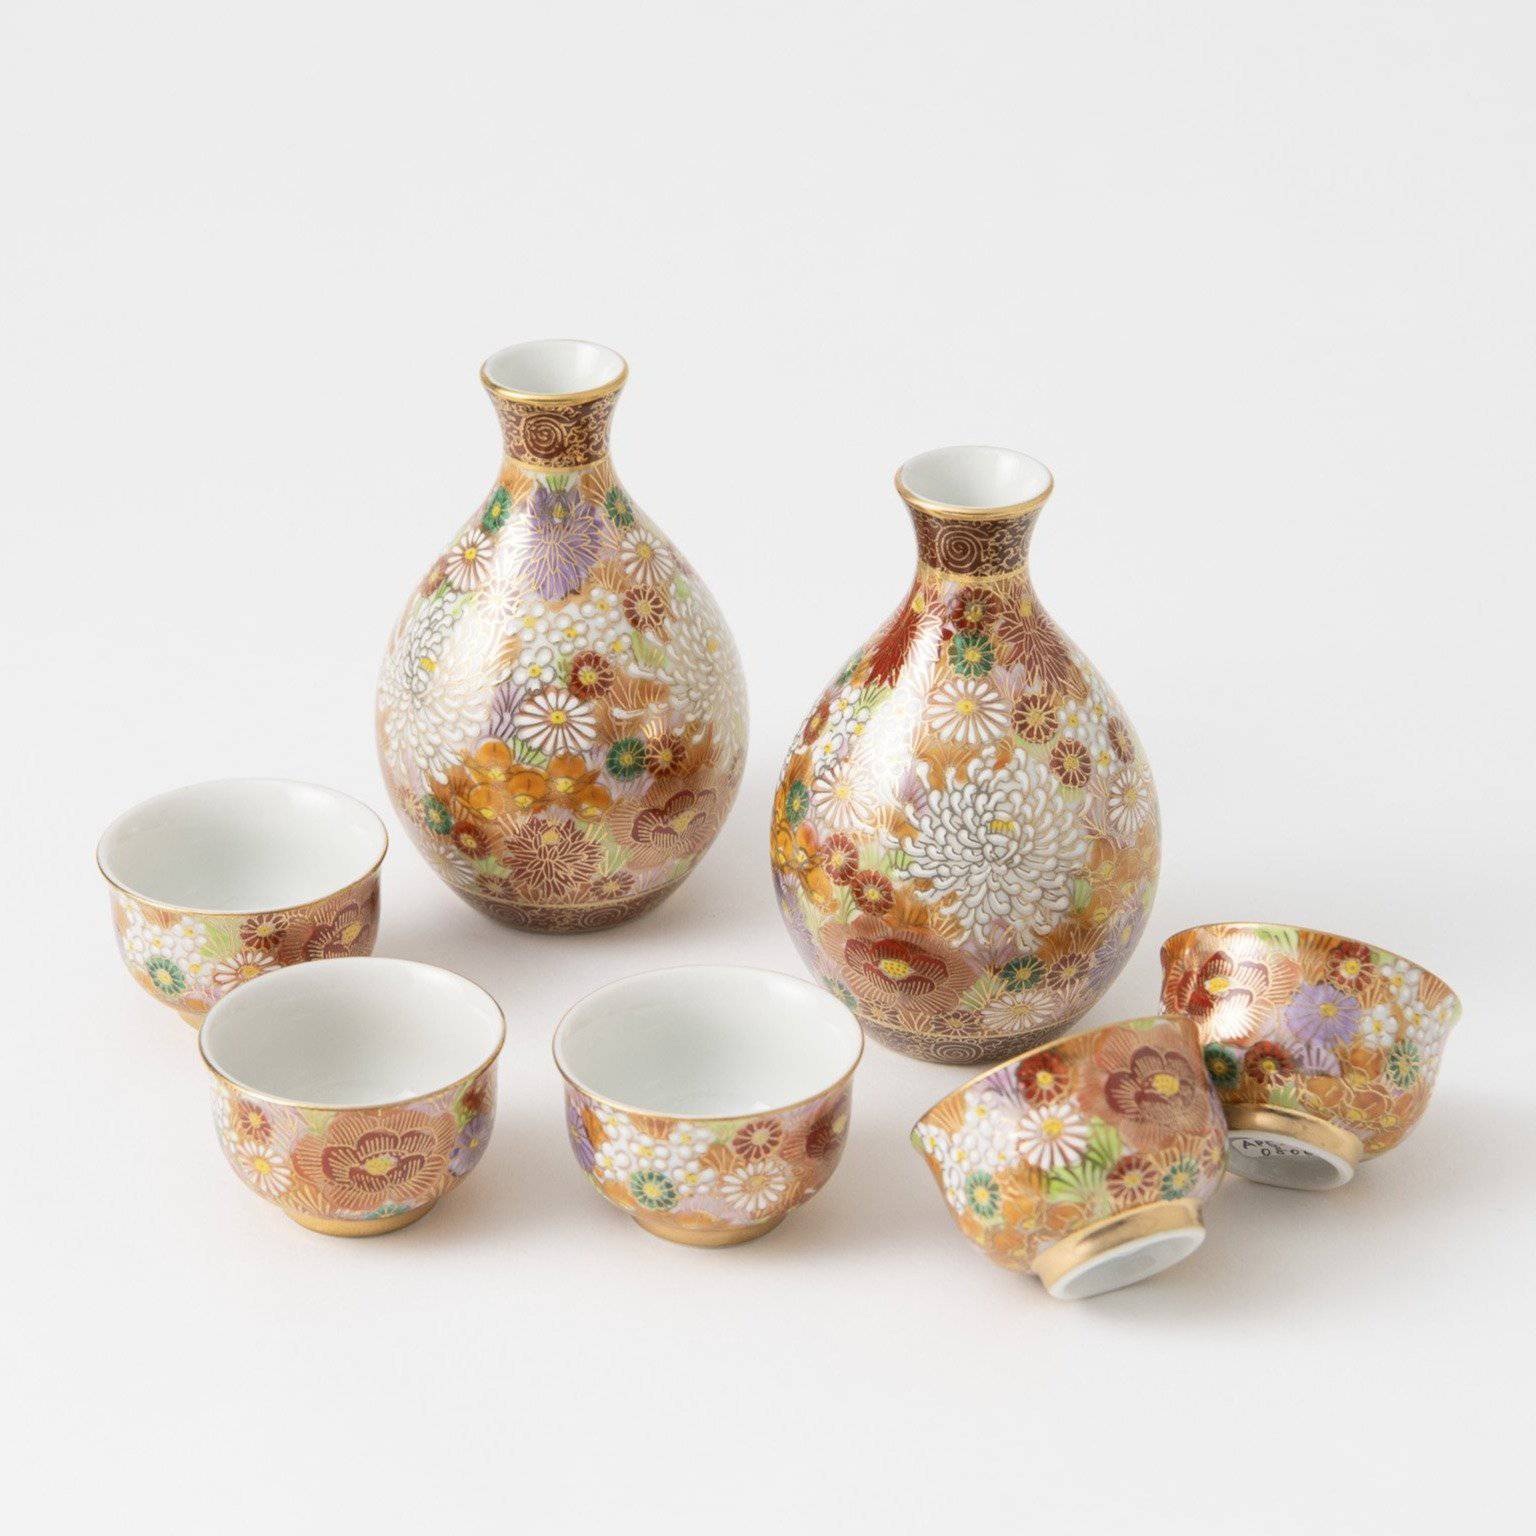 Buy Sake Set Japanese Sake Cup Set Traditional Hand Painted Design